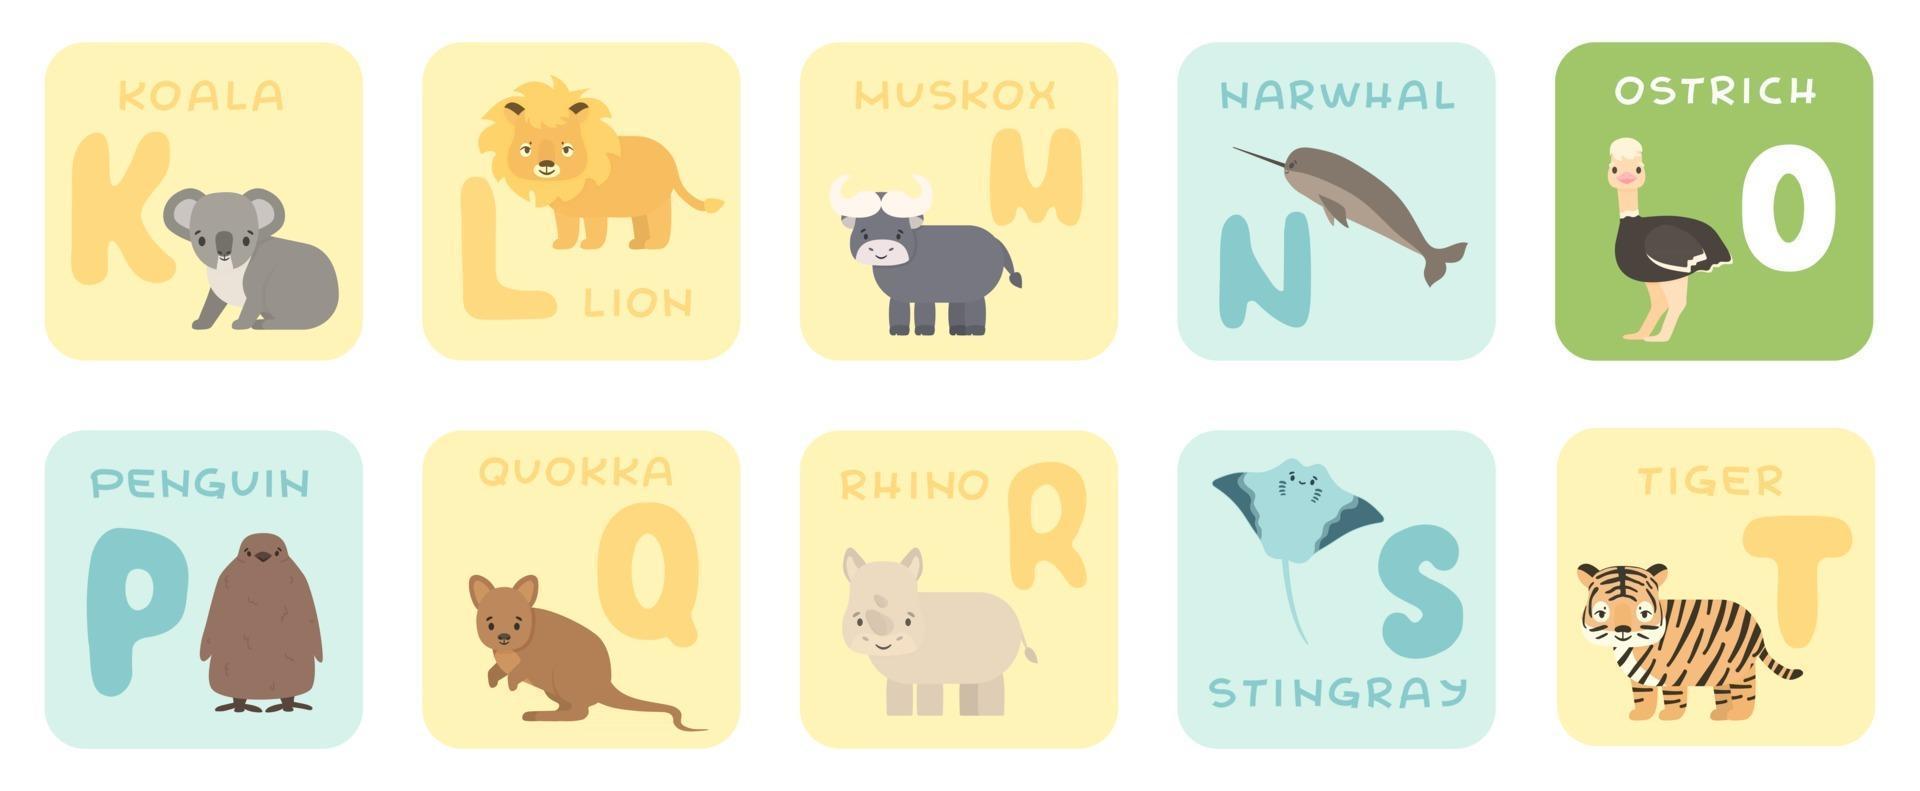 simpatiche carte alfabeto kt con cartoni animati savana animali africani illustrazioni vettoriali zoo